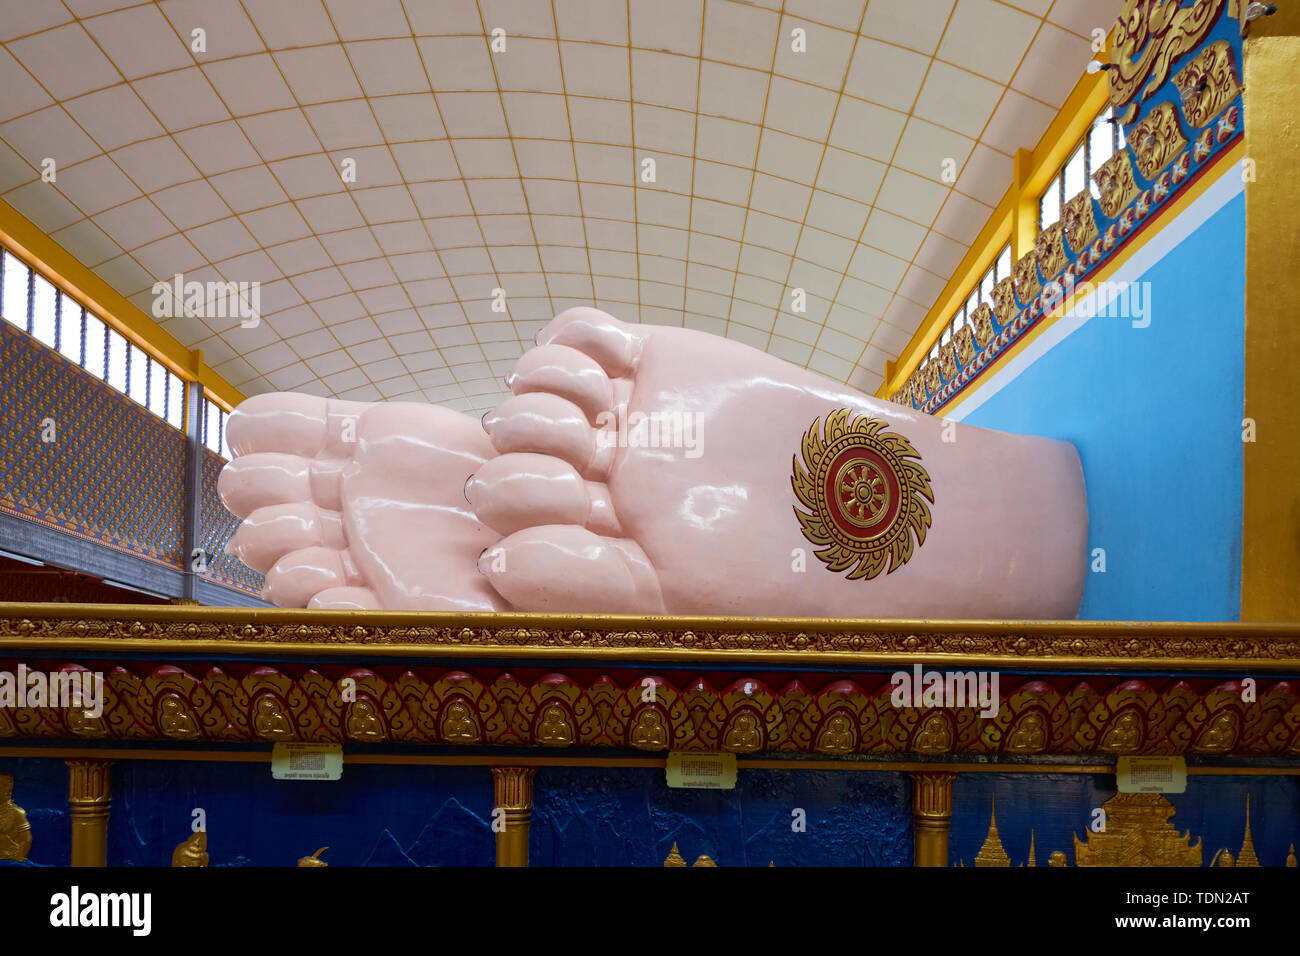 La parte inferior patas inmensas de Buda en el templo del Buda reclinado en George Town, en Penang, Malasia. Foto de stock